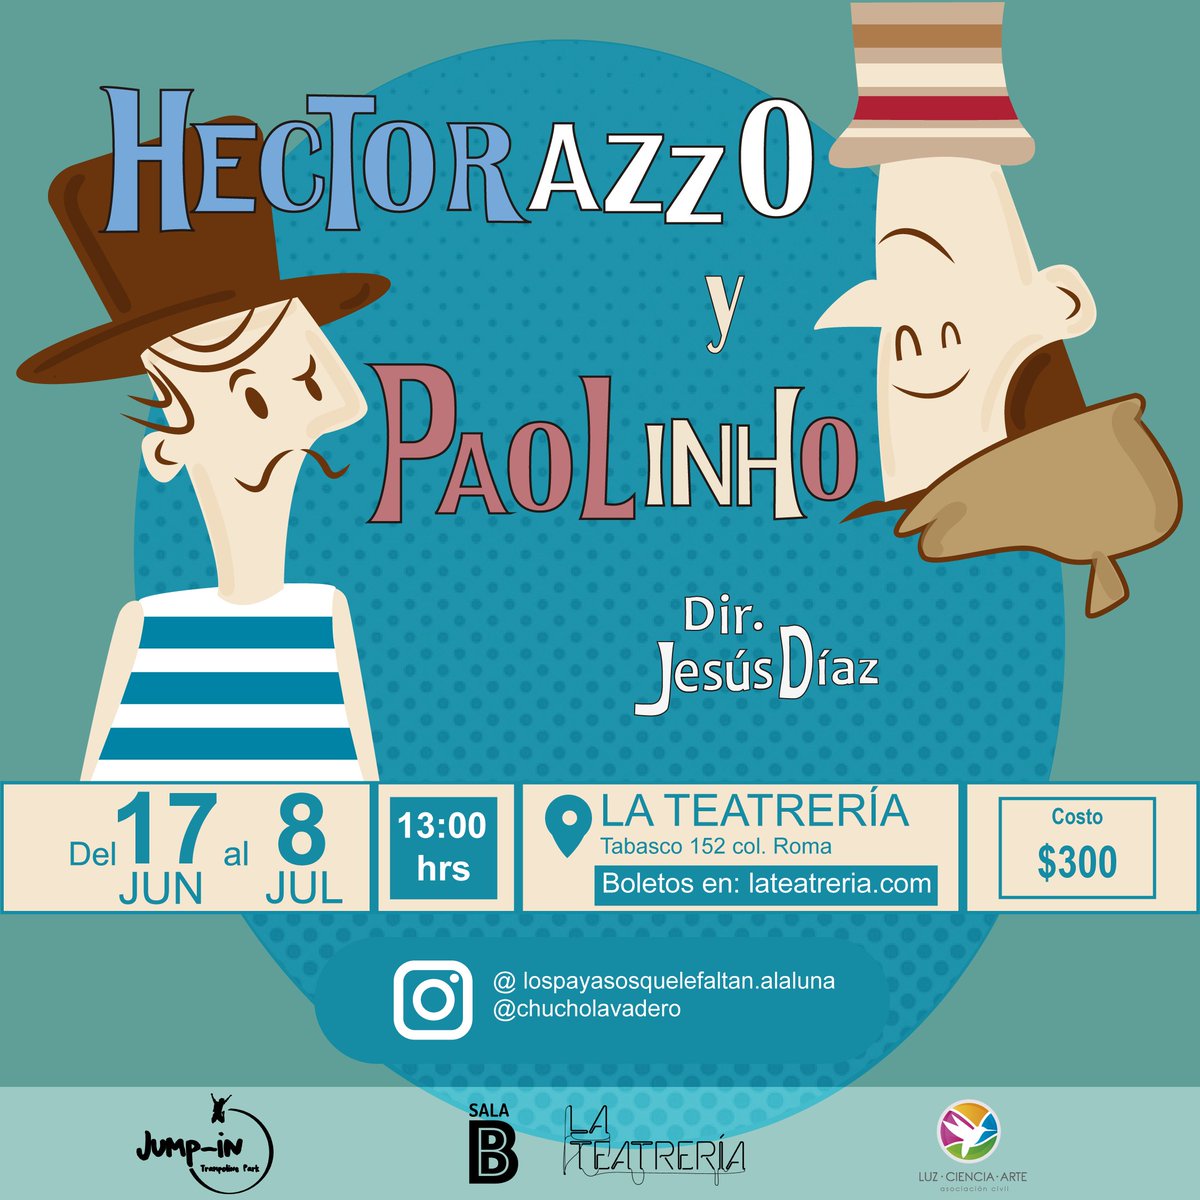 ¡HOY! Gran estreno de #HectorazzoYPaolinho a las 13 hrs en La Teatrería. Aparta tu lugar aquí >>> bit.ly/HectorazzoyPao…